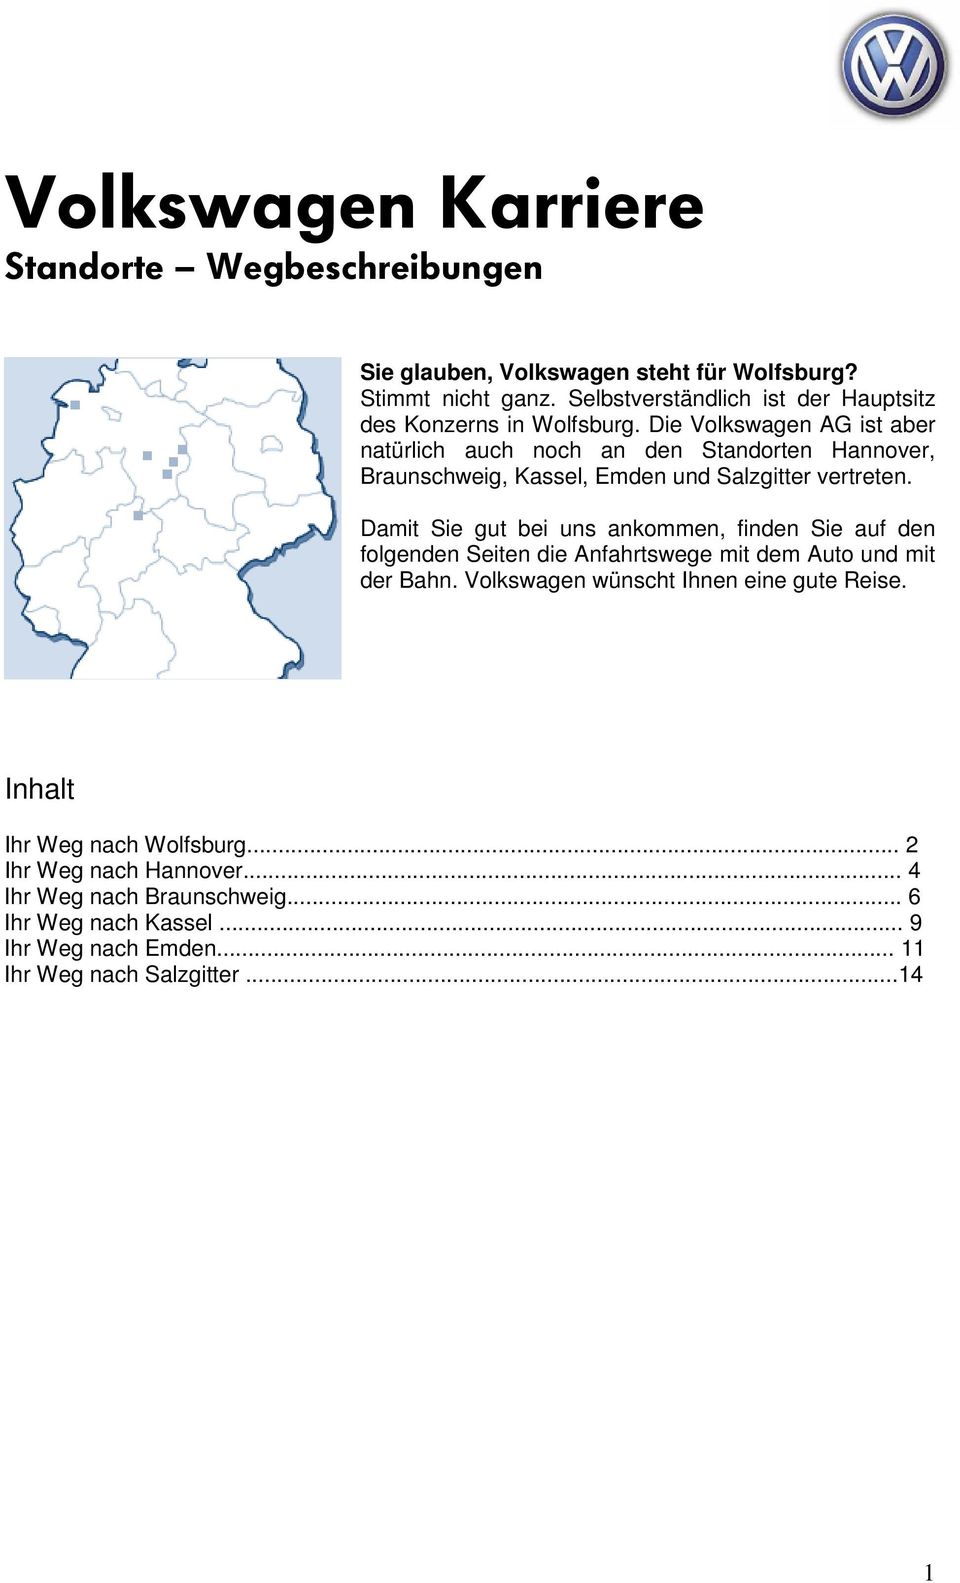 Die Volkswagen AG ist aber natürlich auch noch an den Standorten Hannover, Braunschweig, Kassel, Emden und Salzgitter vertreten.